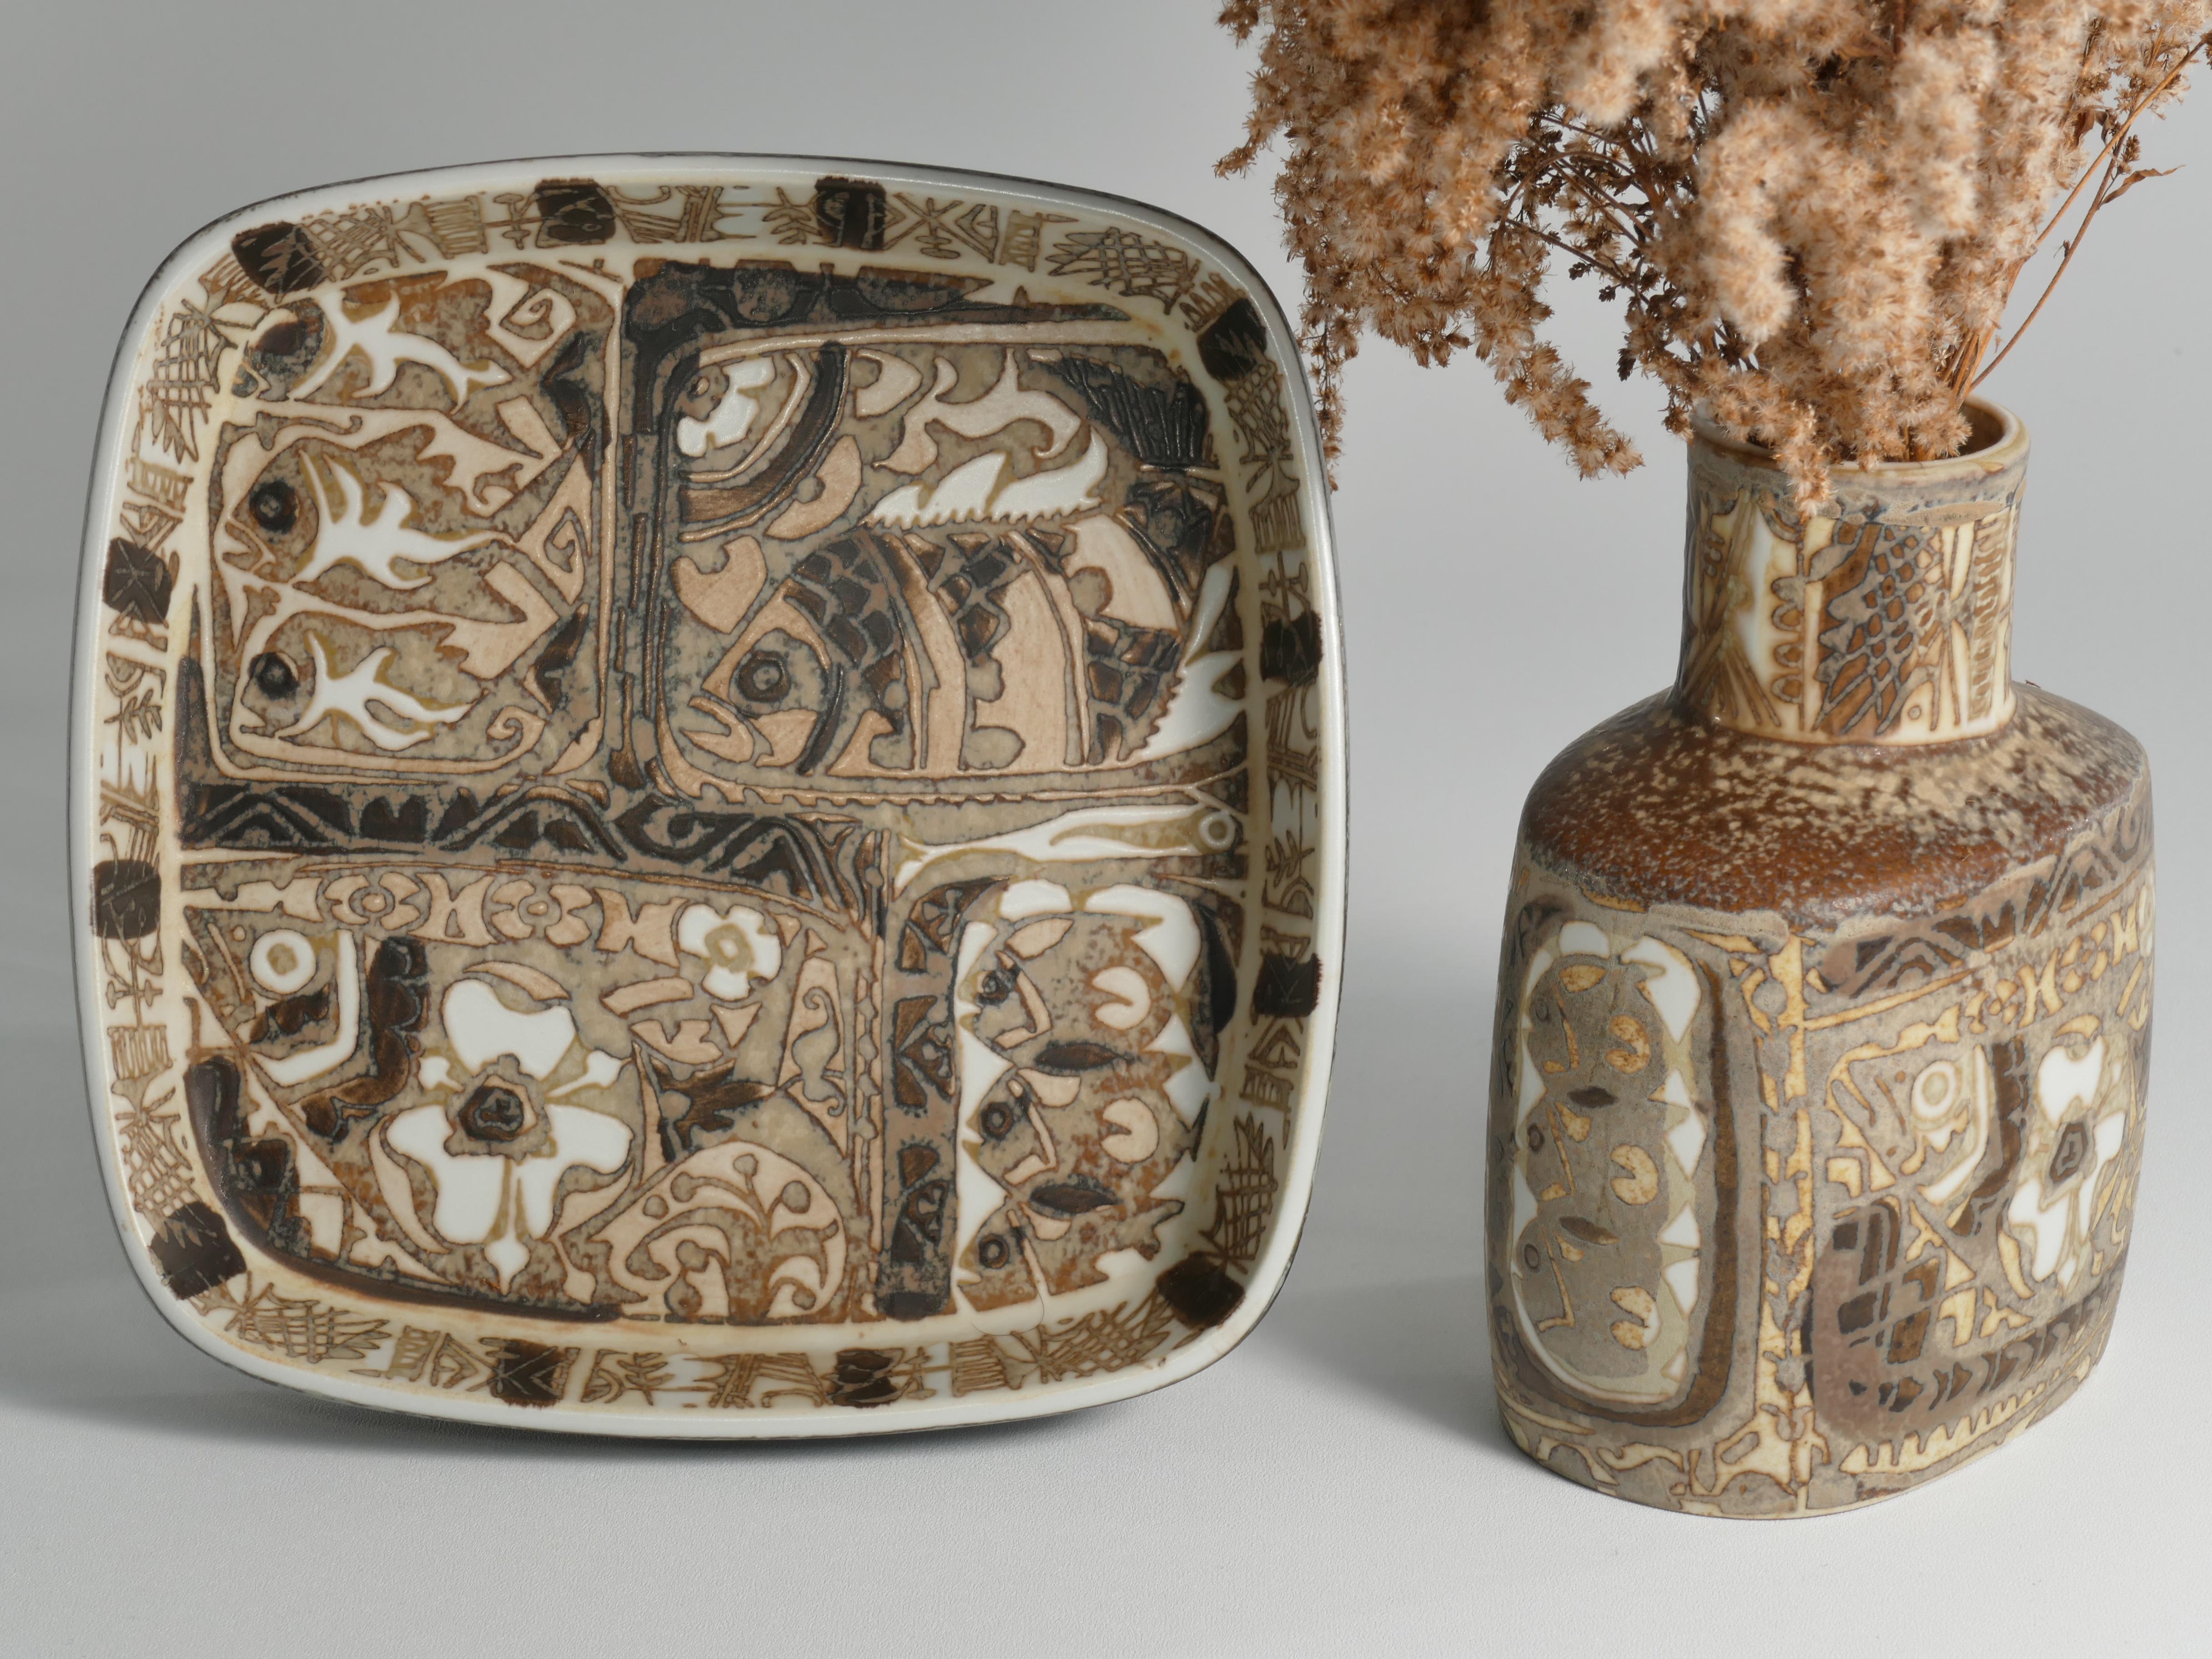 Vernissé Assiette et vase moderne scandinave, céramique, 